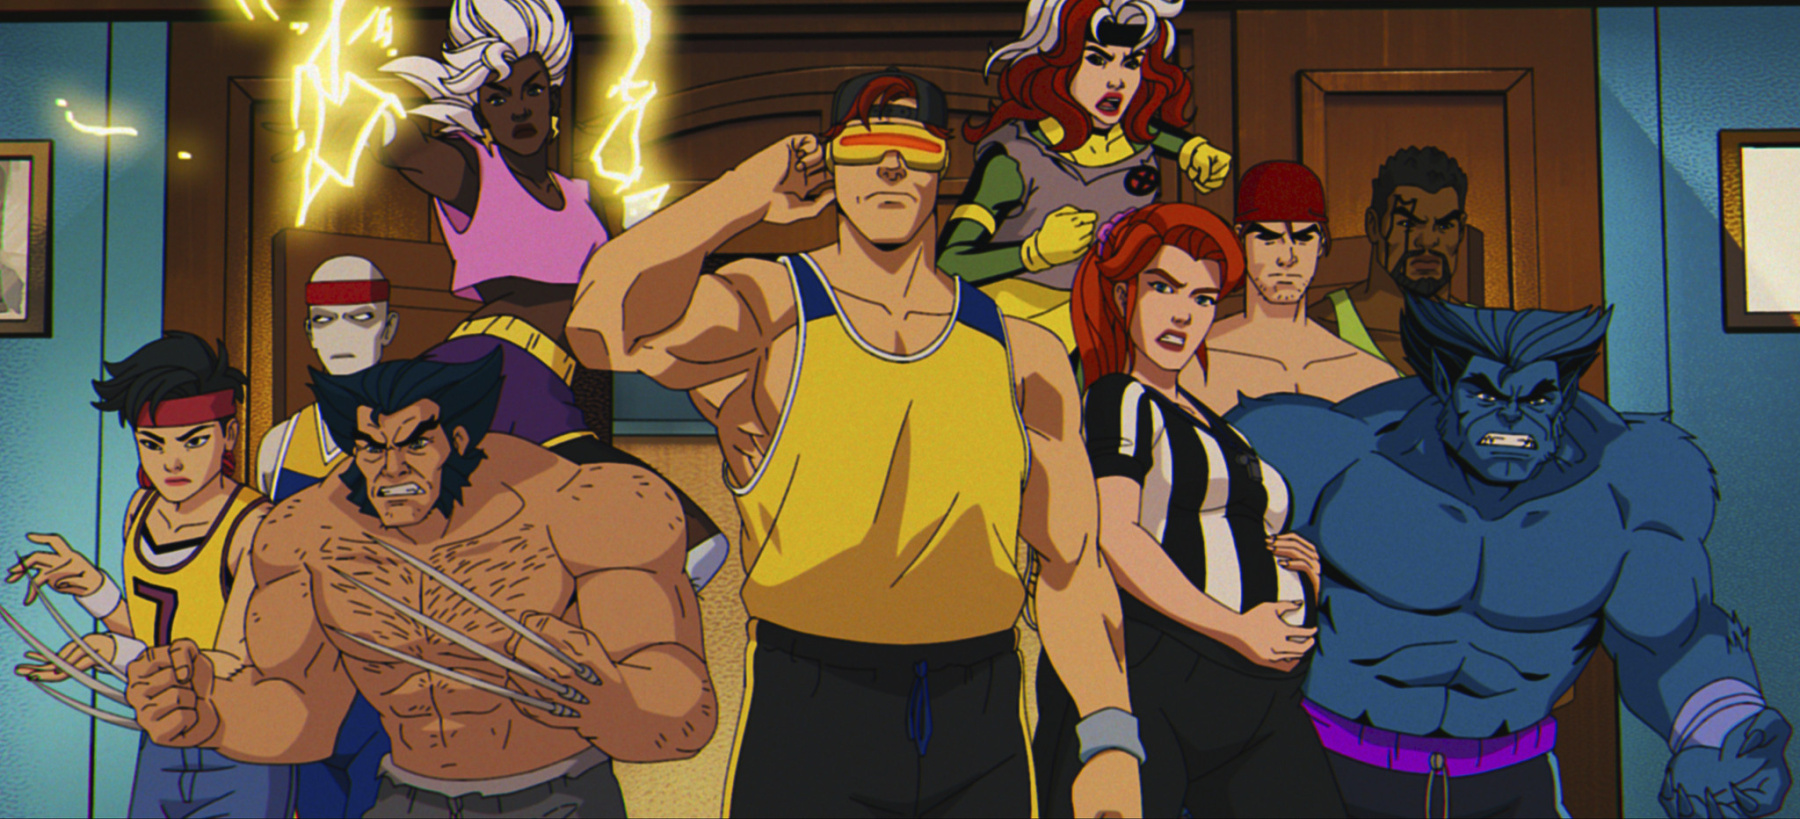 X-Men '97 - Debutto col 100% di recensioni positive su Rotten Tomatoes